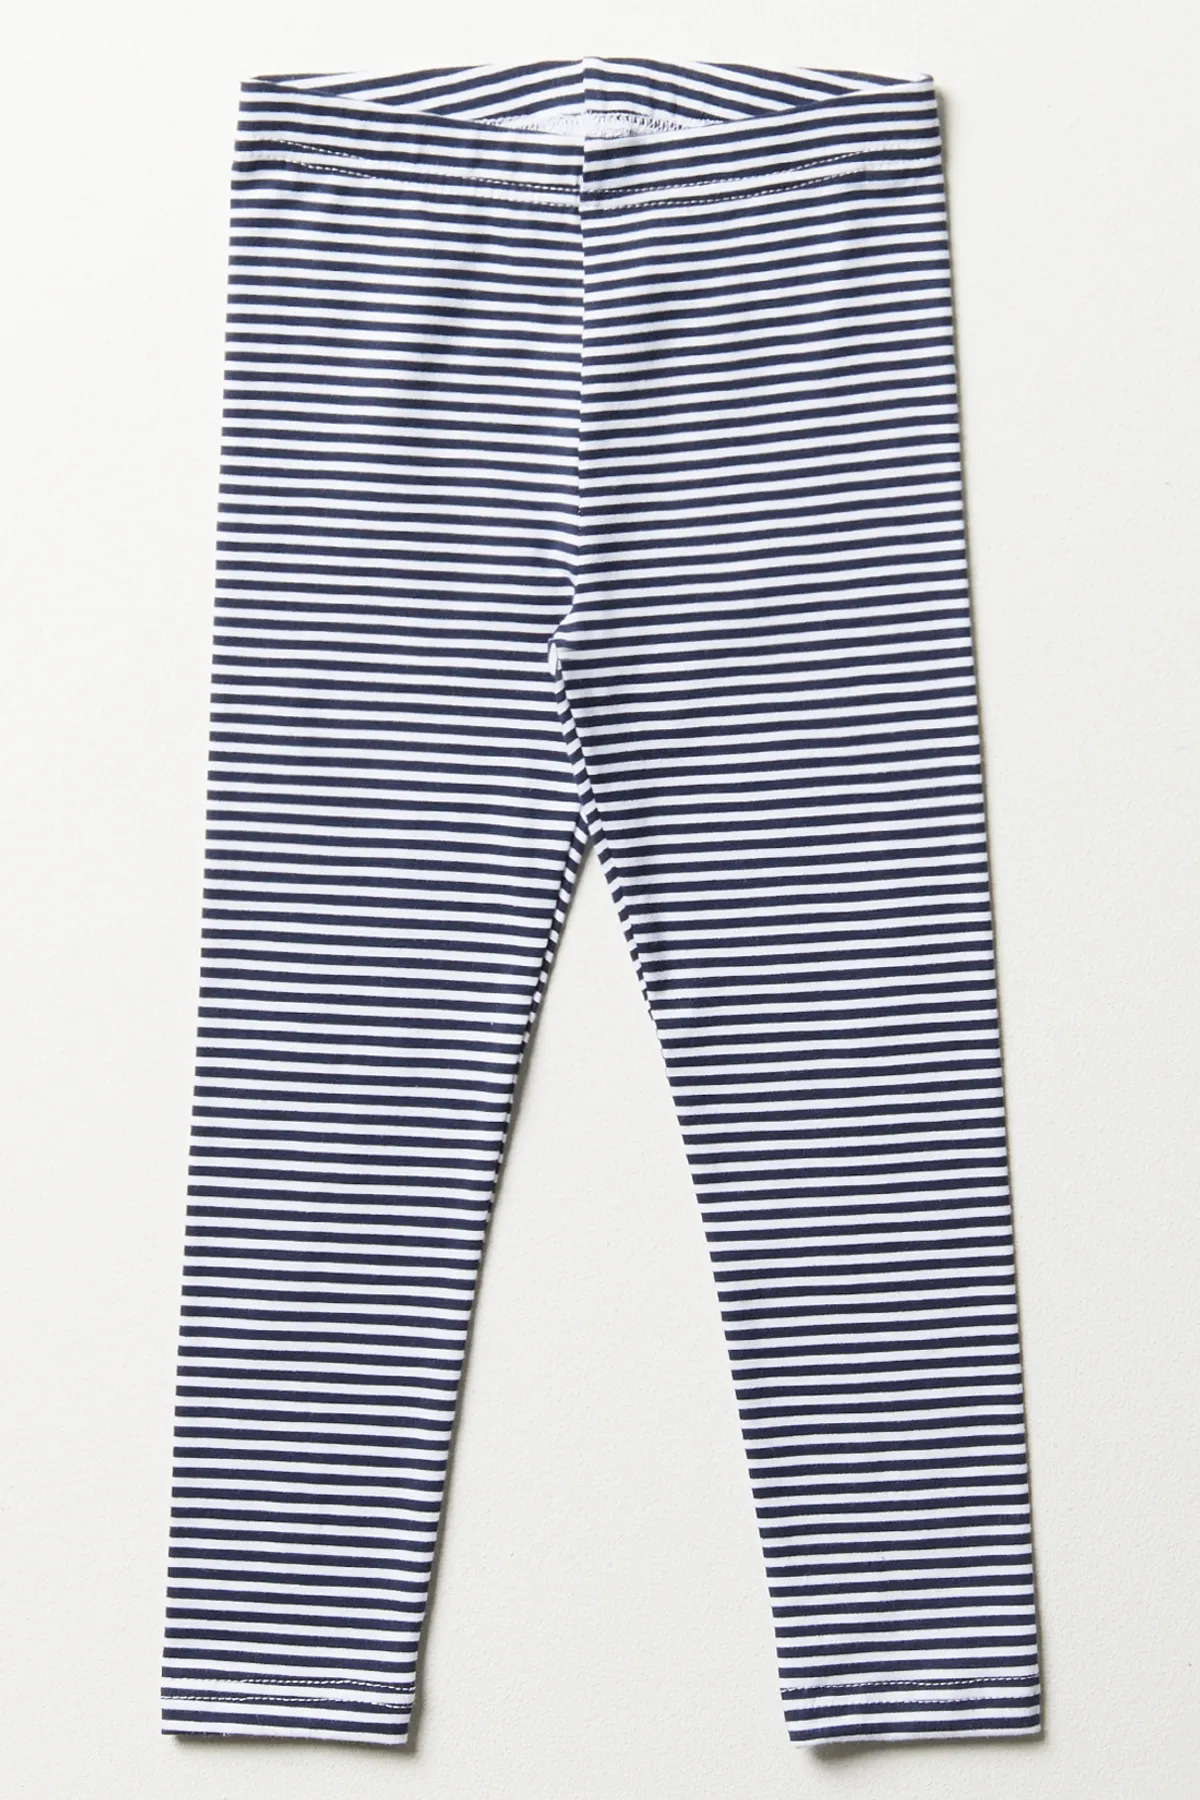 Stripe leggings navy & white - GIRLS 2-10 YEARS Bottoms & Jeans